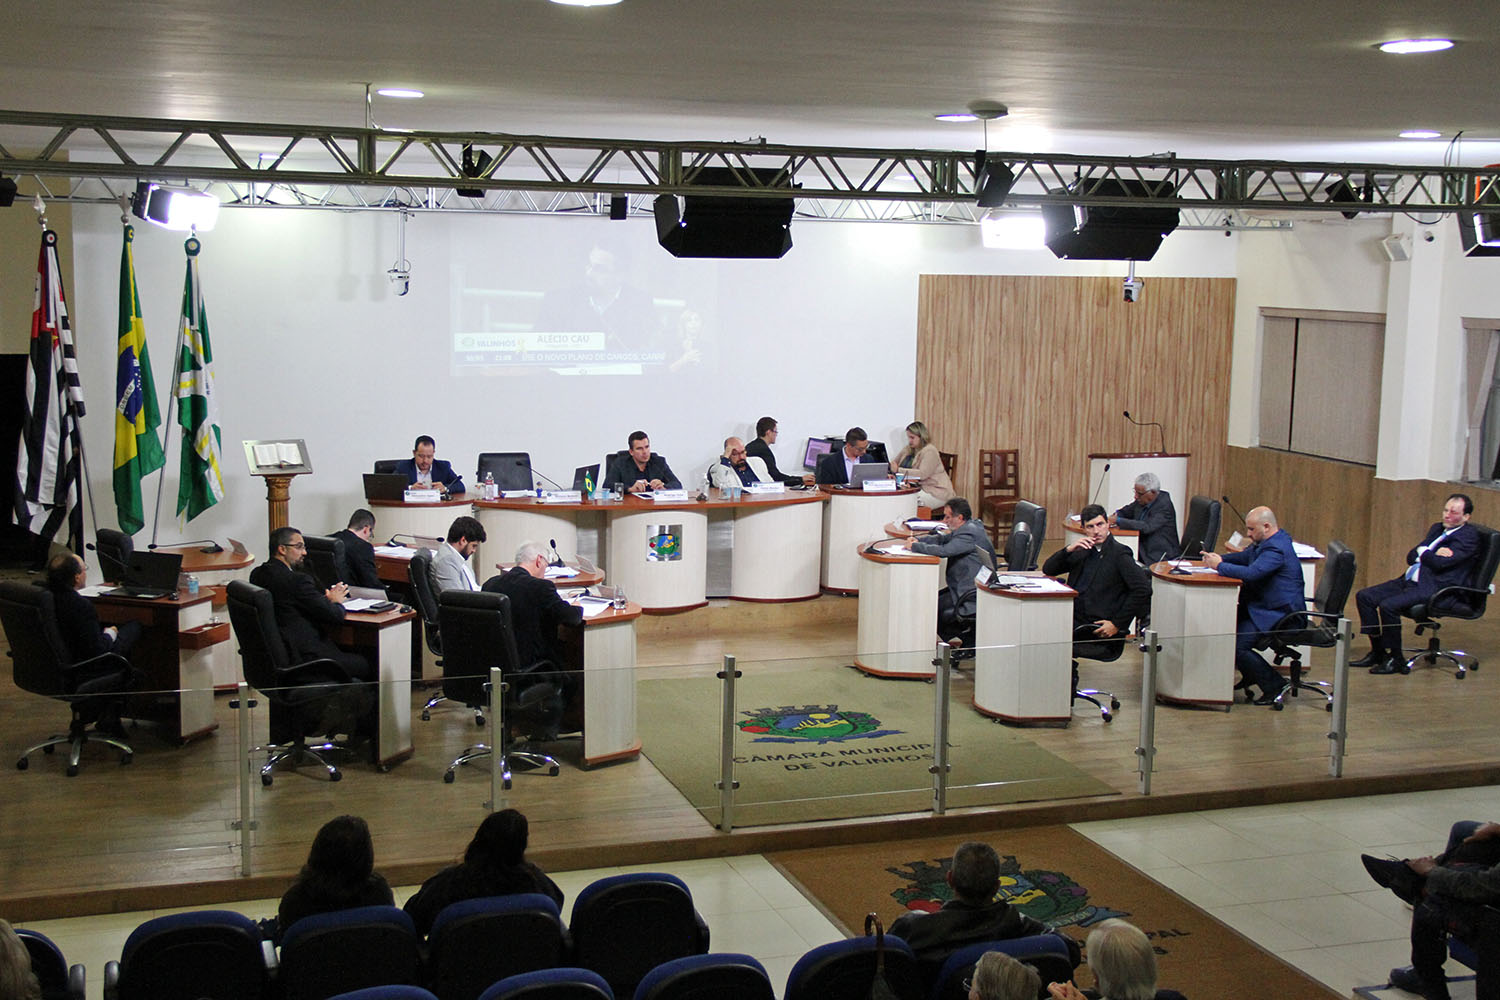 #PraCegoVer: foto mostra o plenário da Câmara visto de cima, com os vereadores sentados em seus lugares.